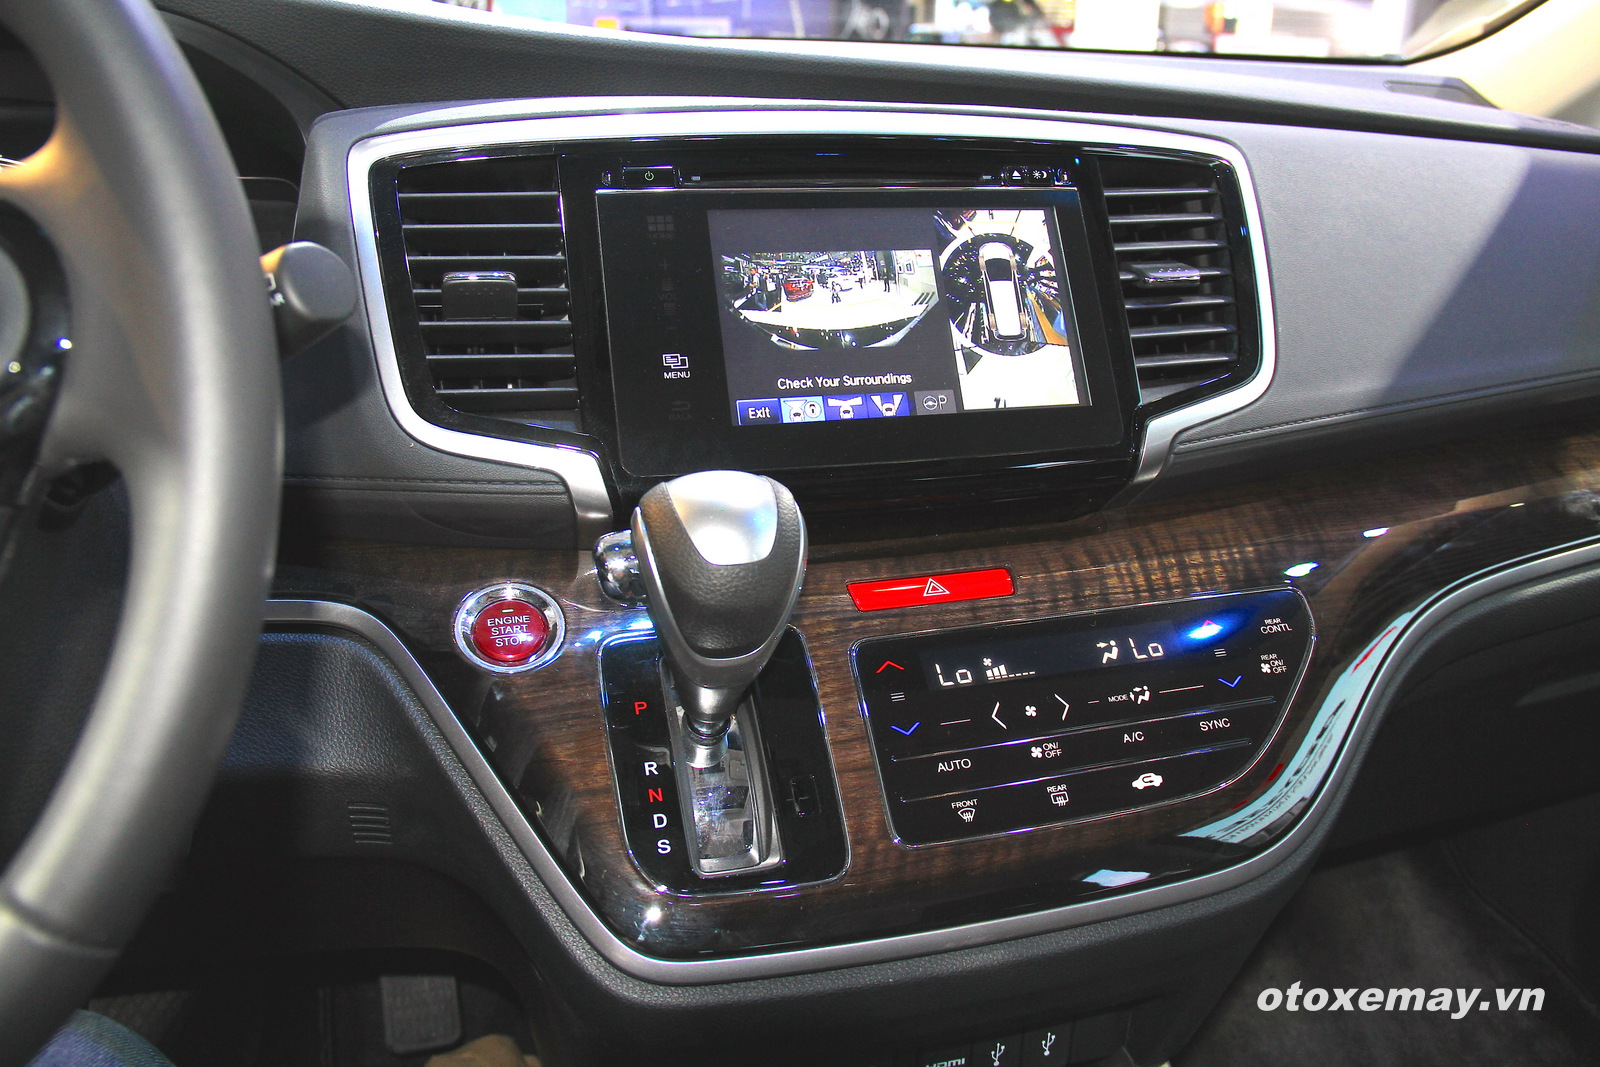 Honda Odyssey tiếp cận khách hàng toàn quốc - ảnh 6